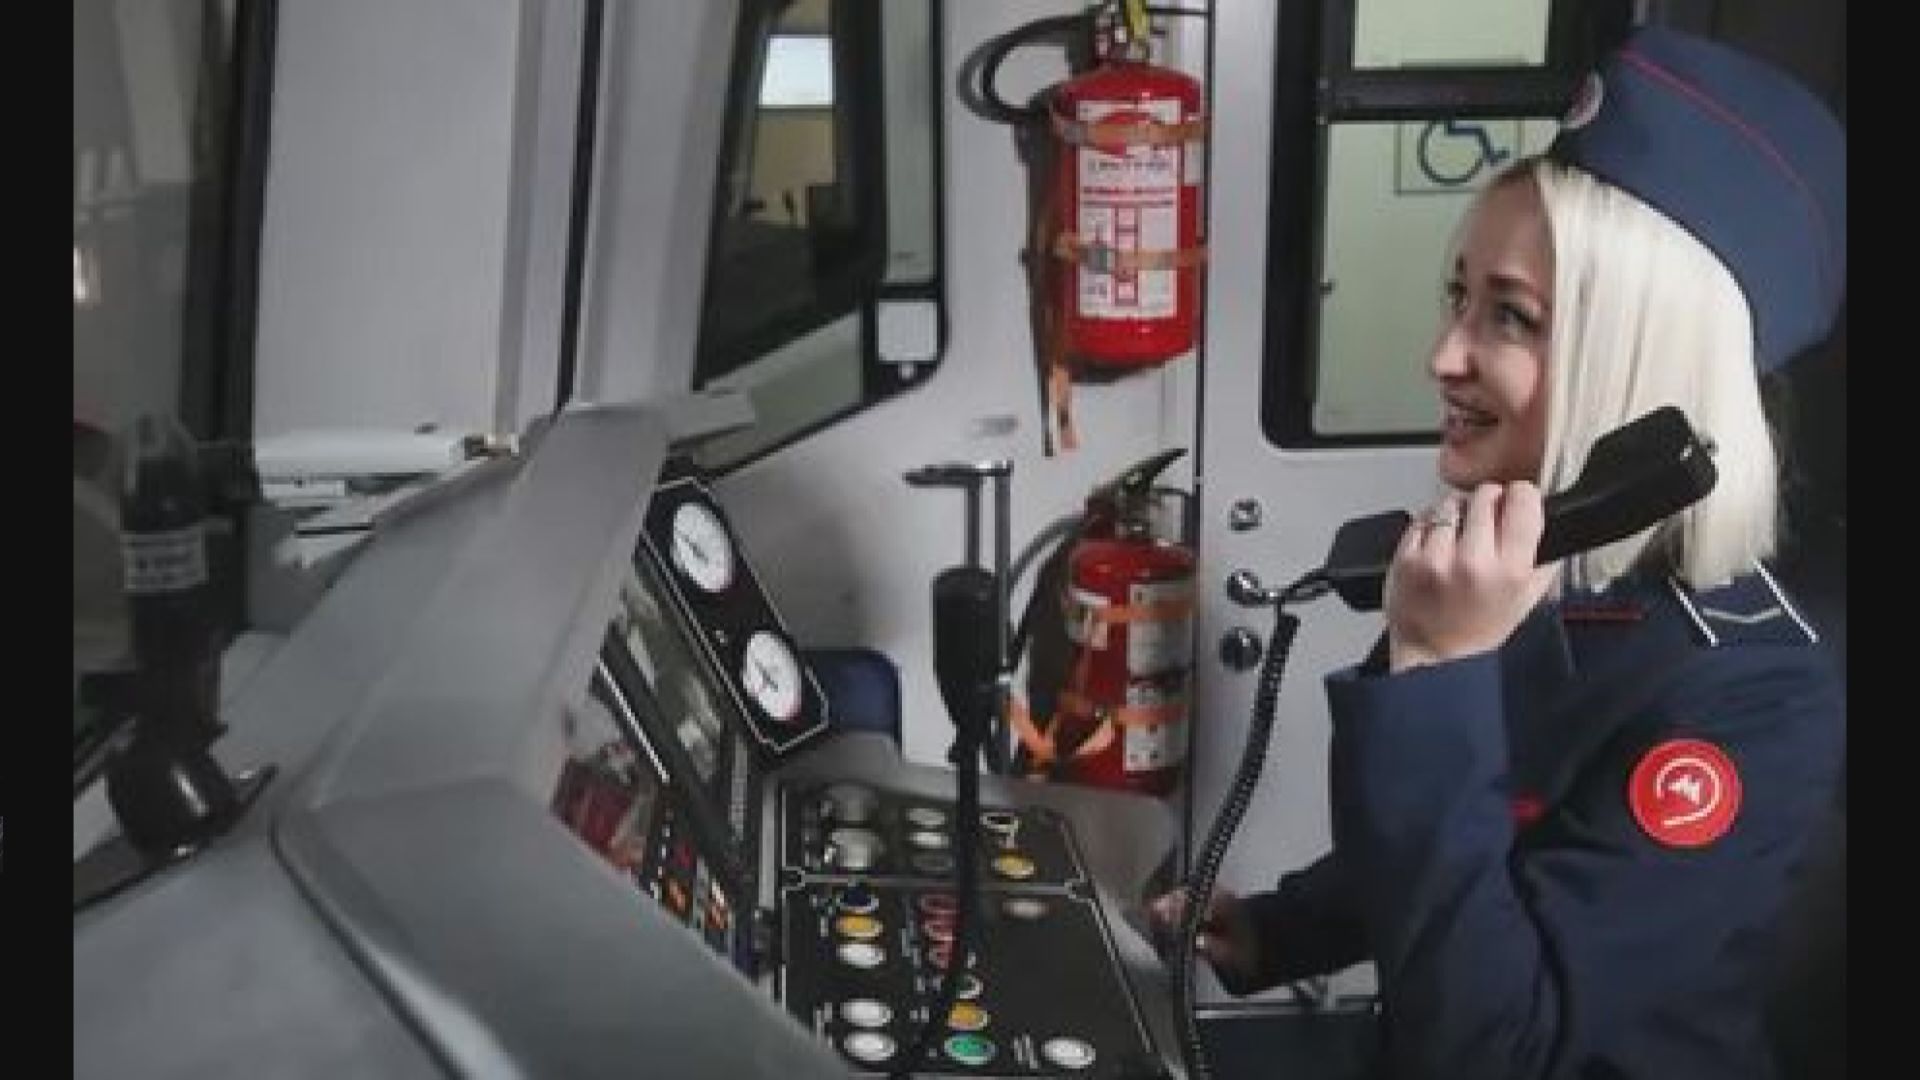 【環球薈報】莫斯科地鐵首次僱用女性駕駛員